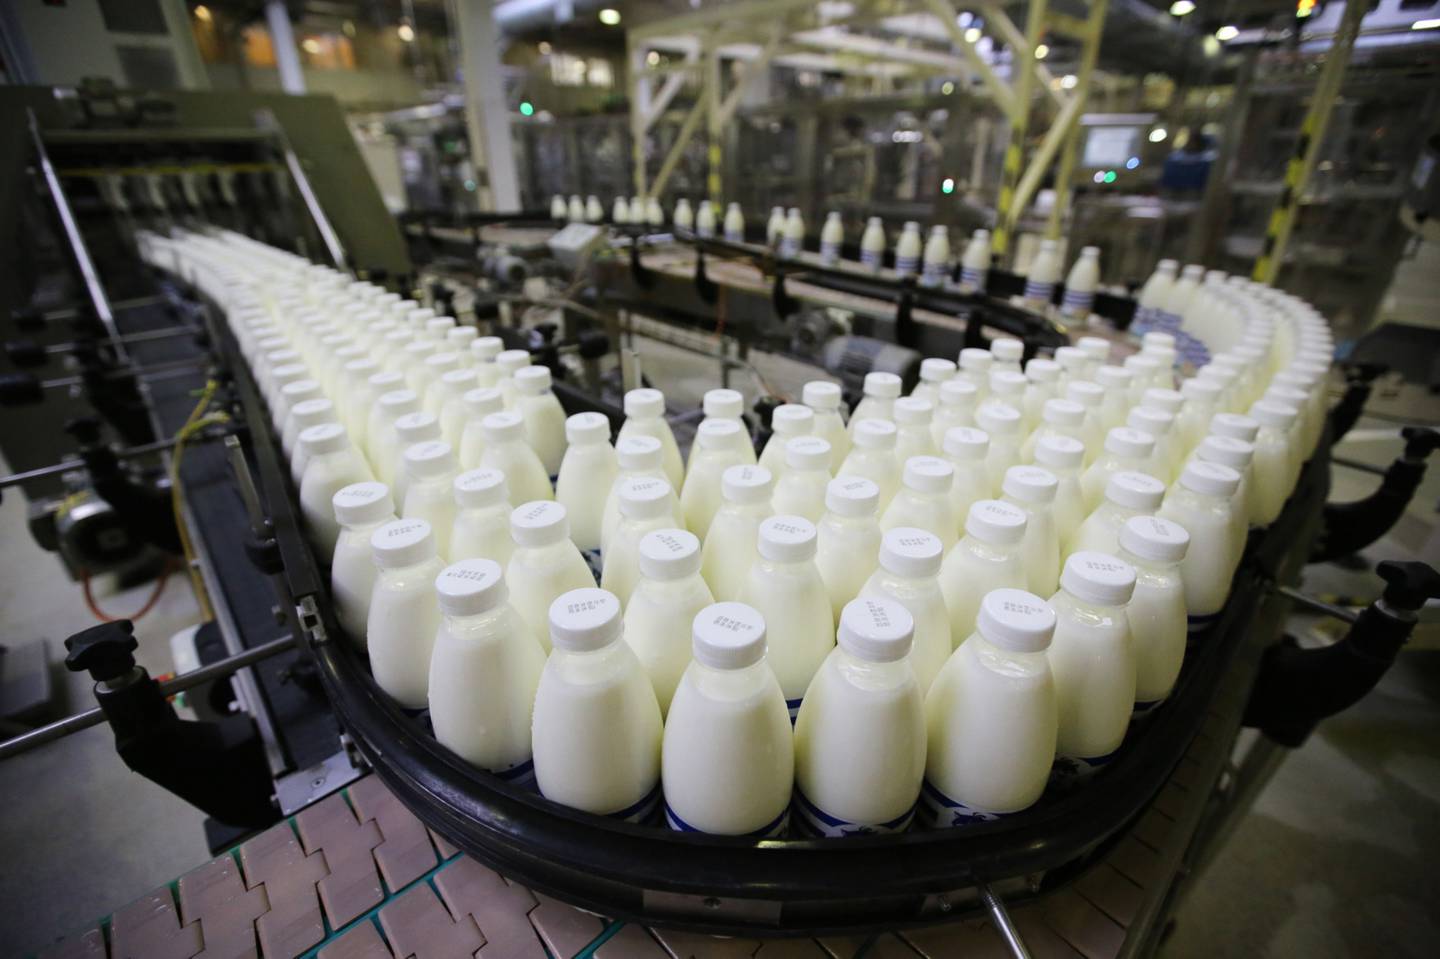 Botellas de leche pasteurizada pasan a lo largo de una cinta transportadora antes de su envasado.dfd